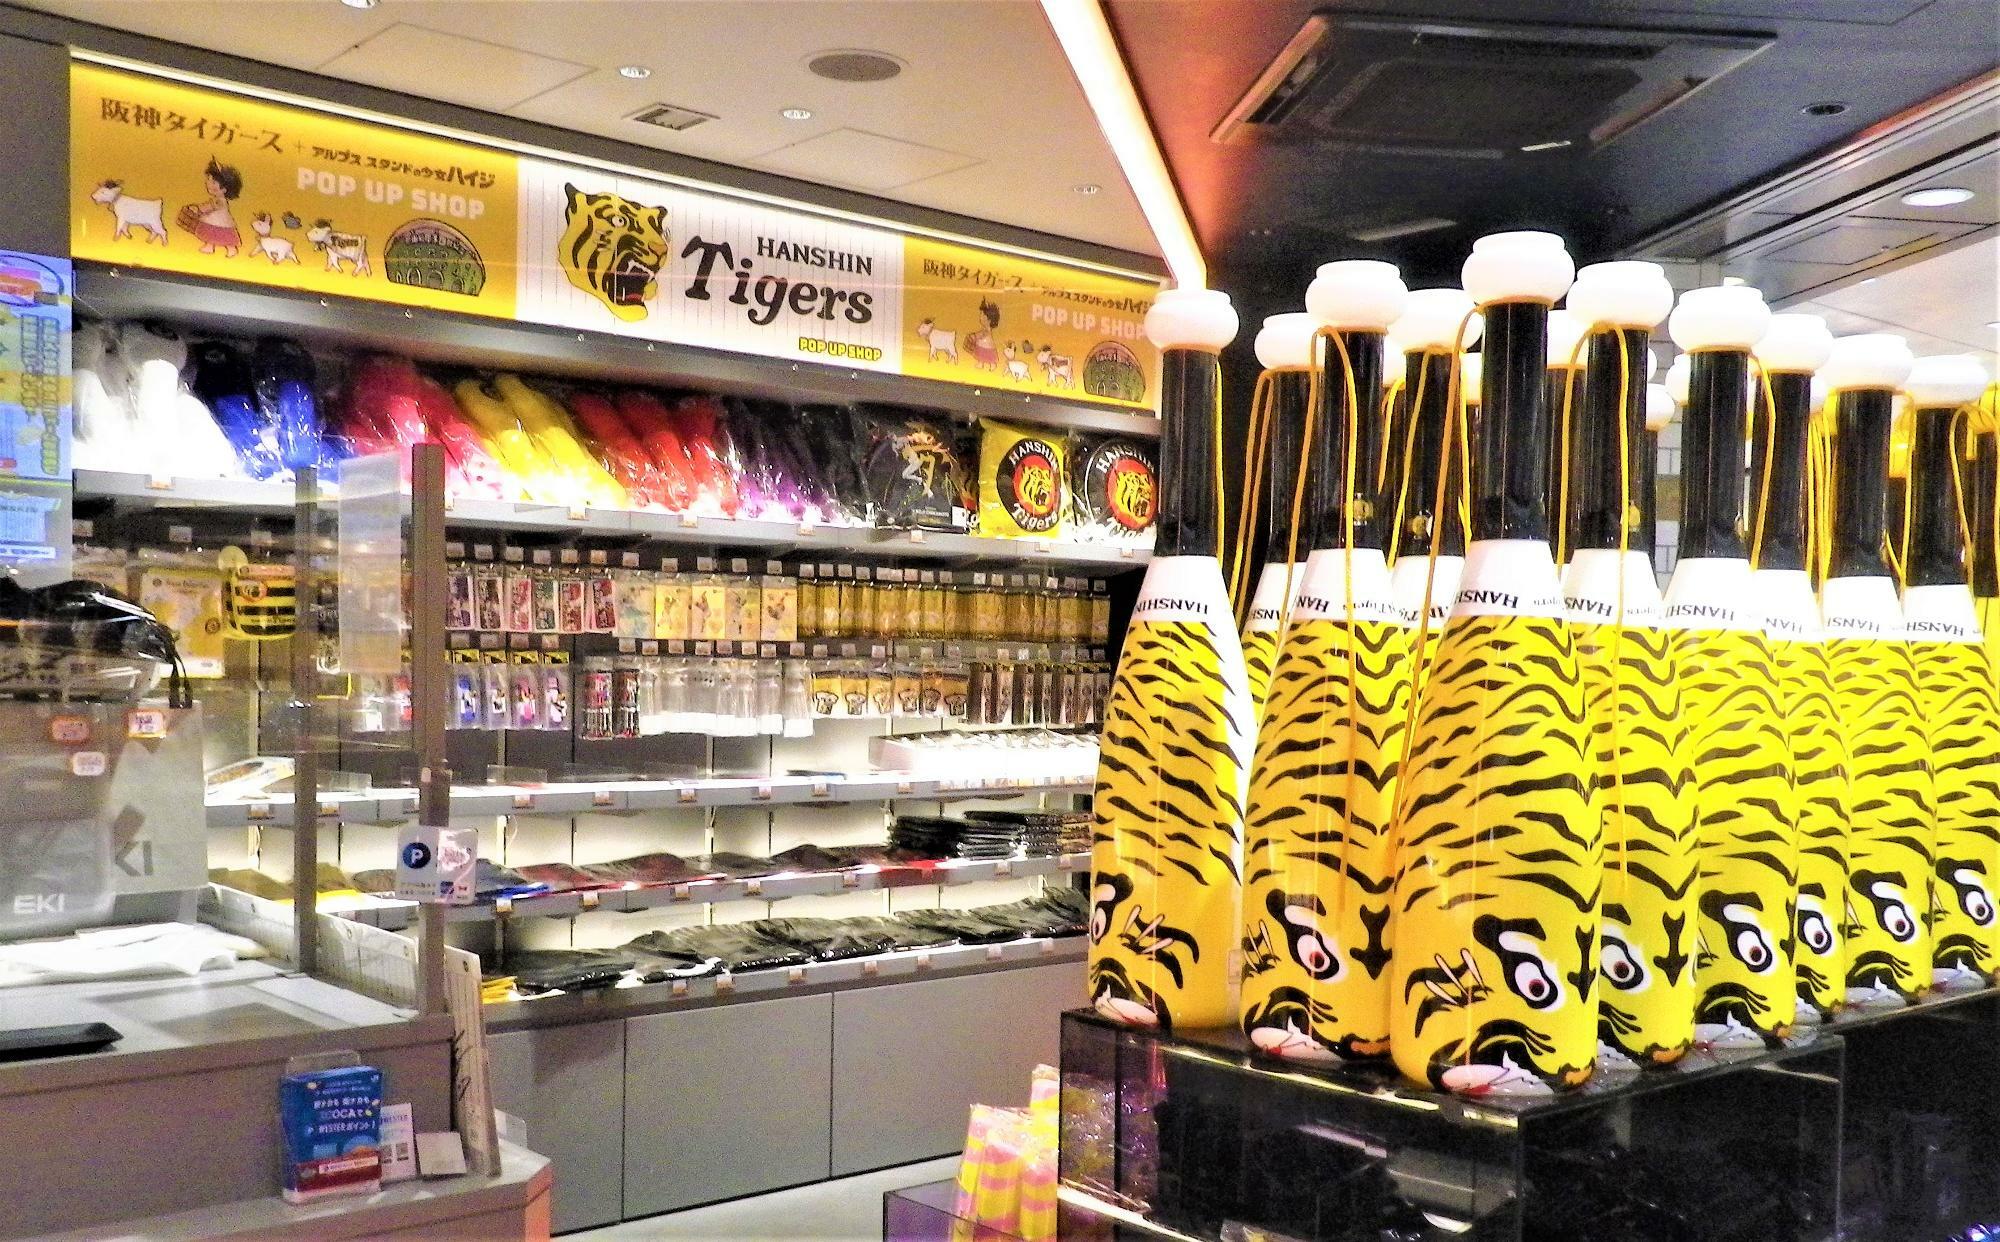 阪神タイガース尽くしのポップアップショップ店内。